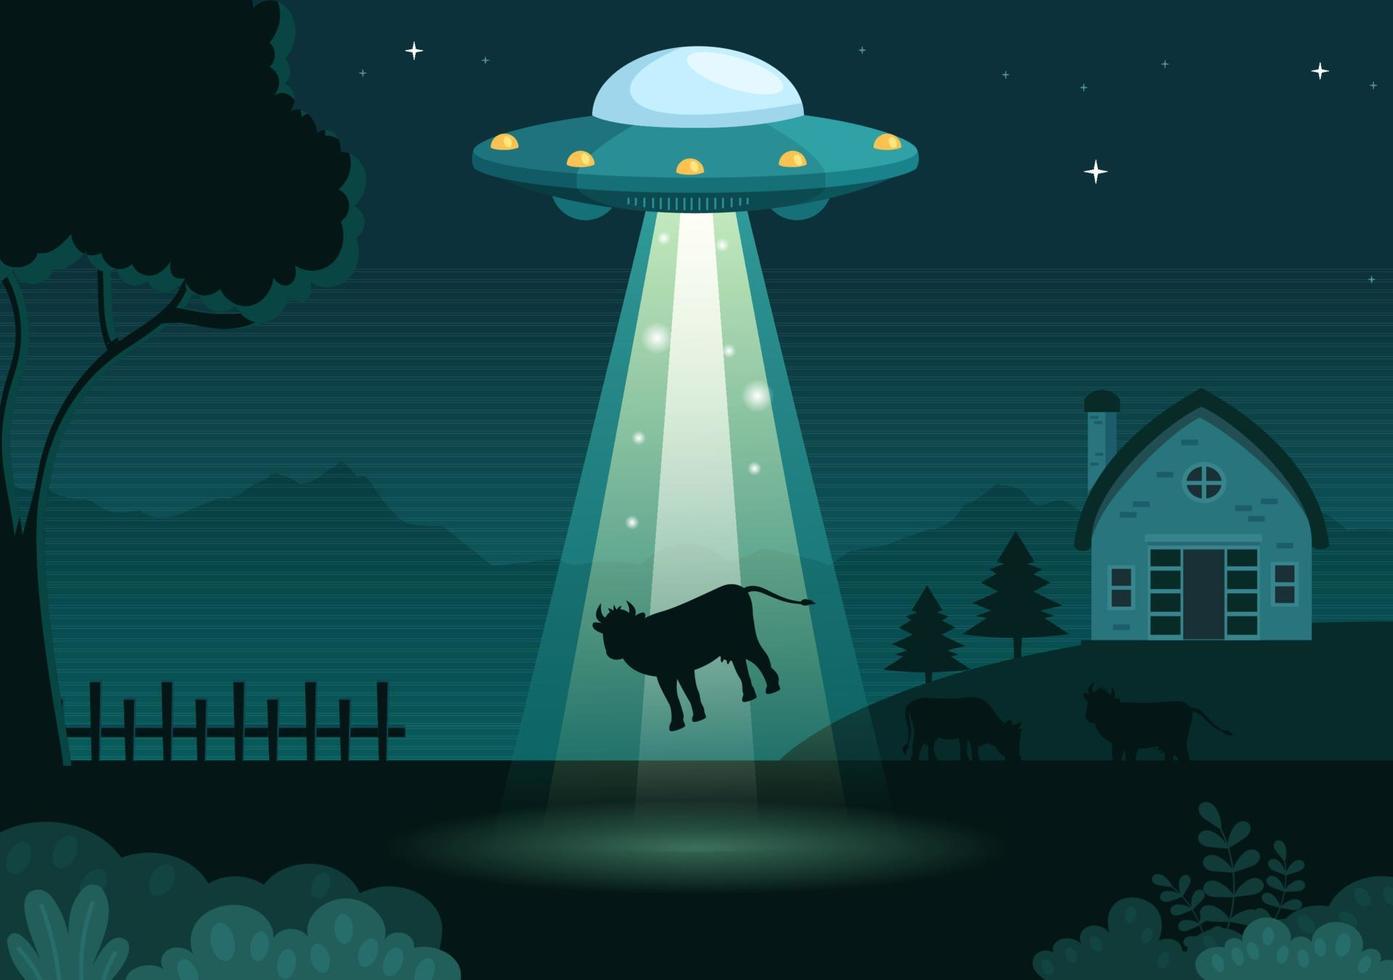 nave espacial voadora ufo com disco voador sobre o céu da cidade abduz humanos ou animais na ilustração de modelos desenhados à mão de desenho animado plano vetor